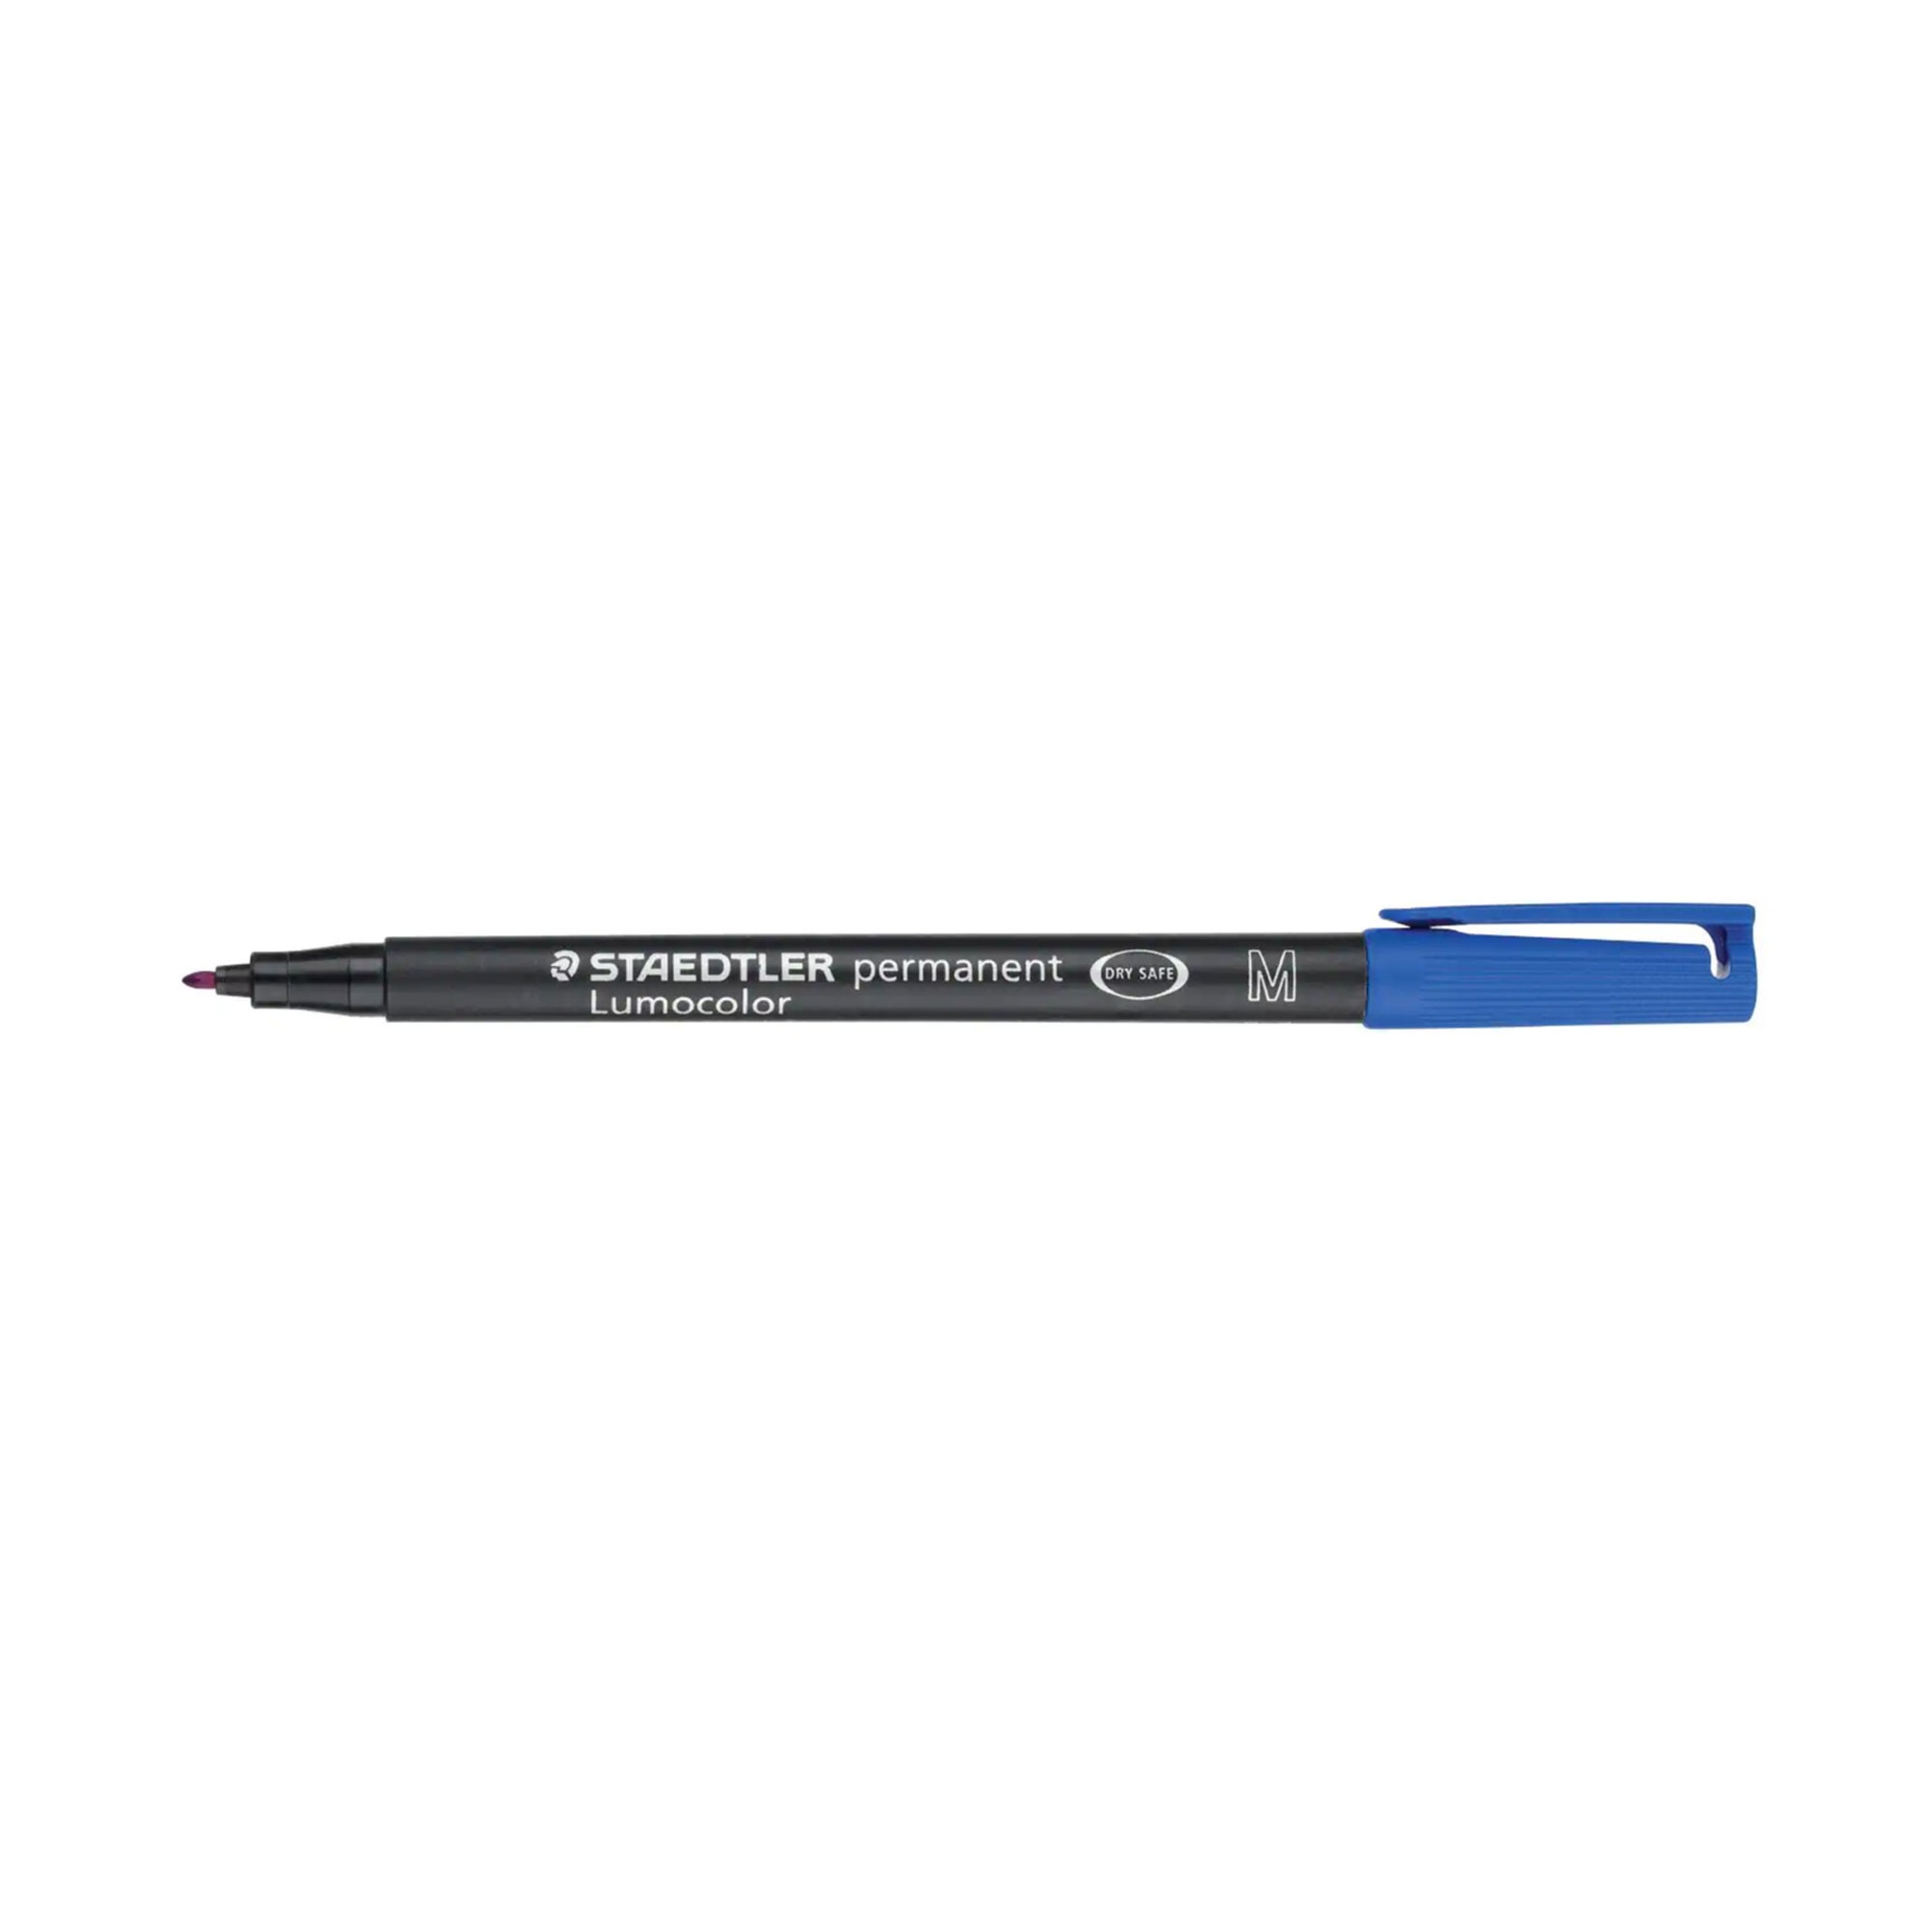 Staedtler Lumocolor Permanent Garden Marker Pen 1.0mm OUTDOOR WATERPROOF  4007817319154